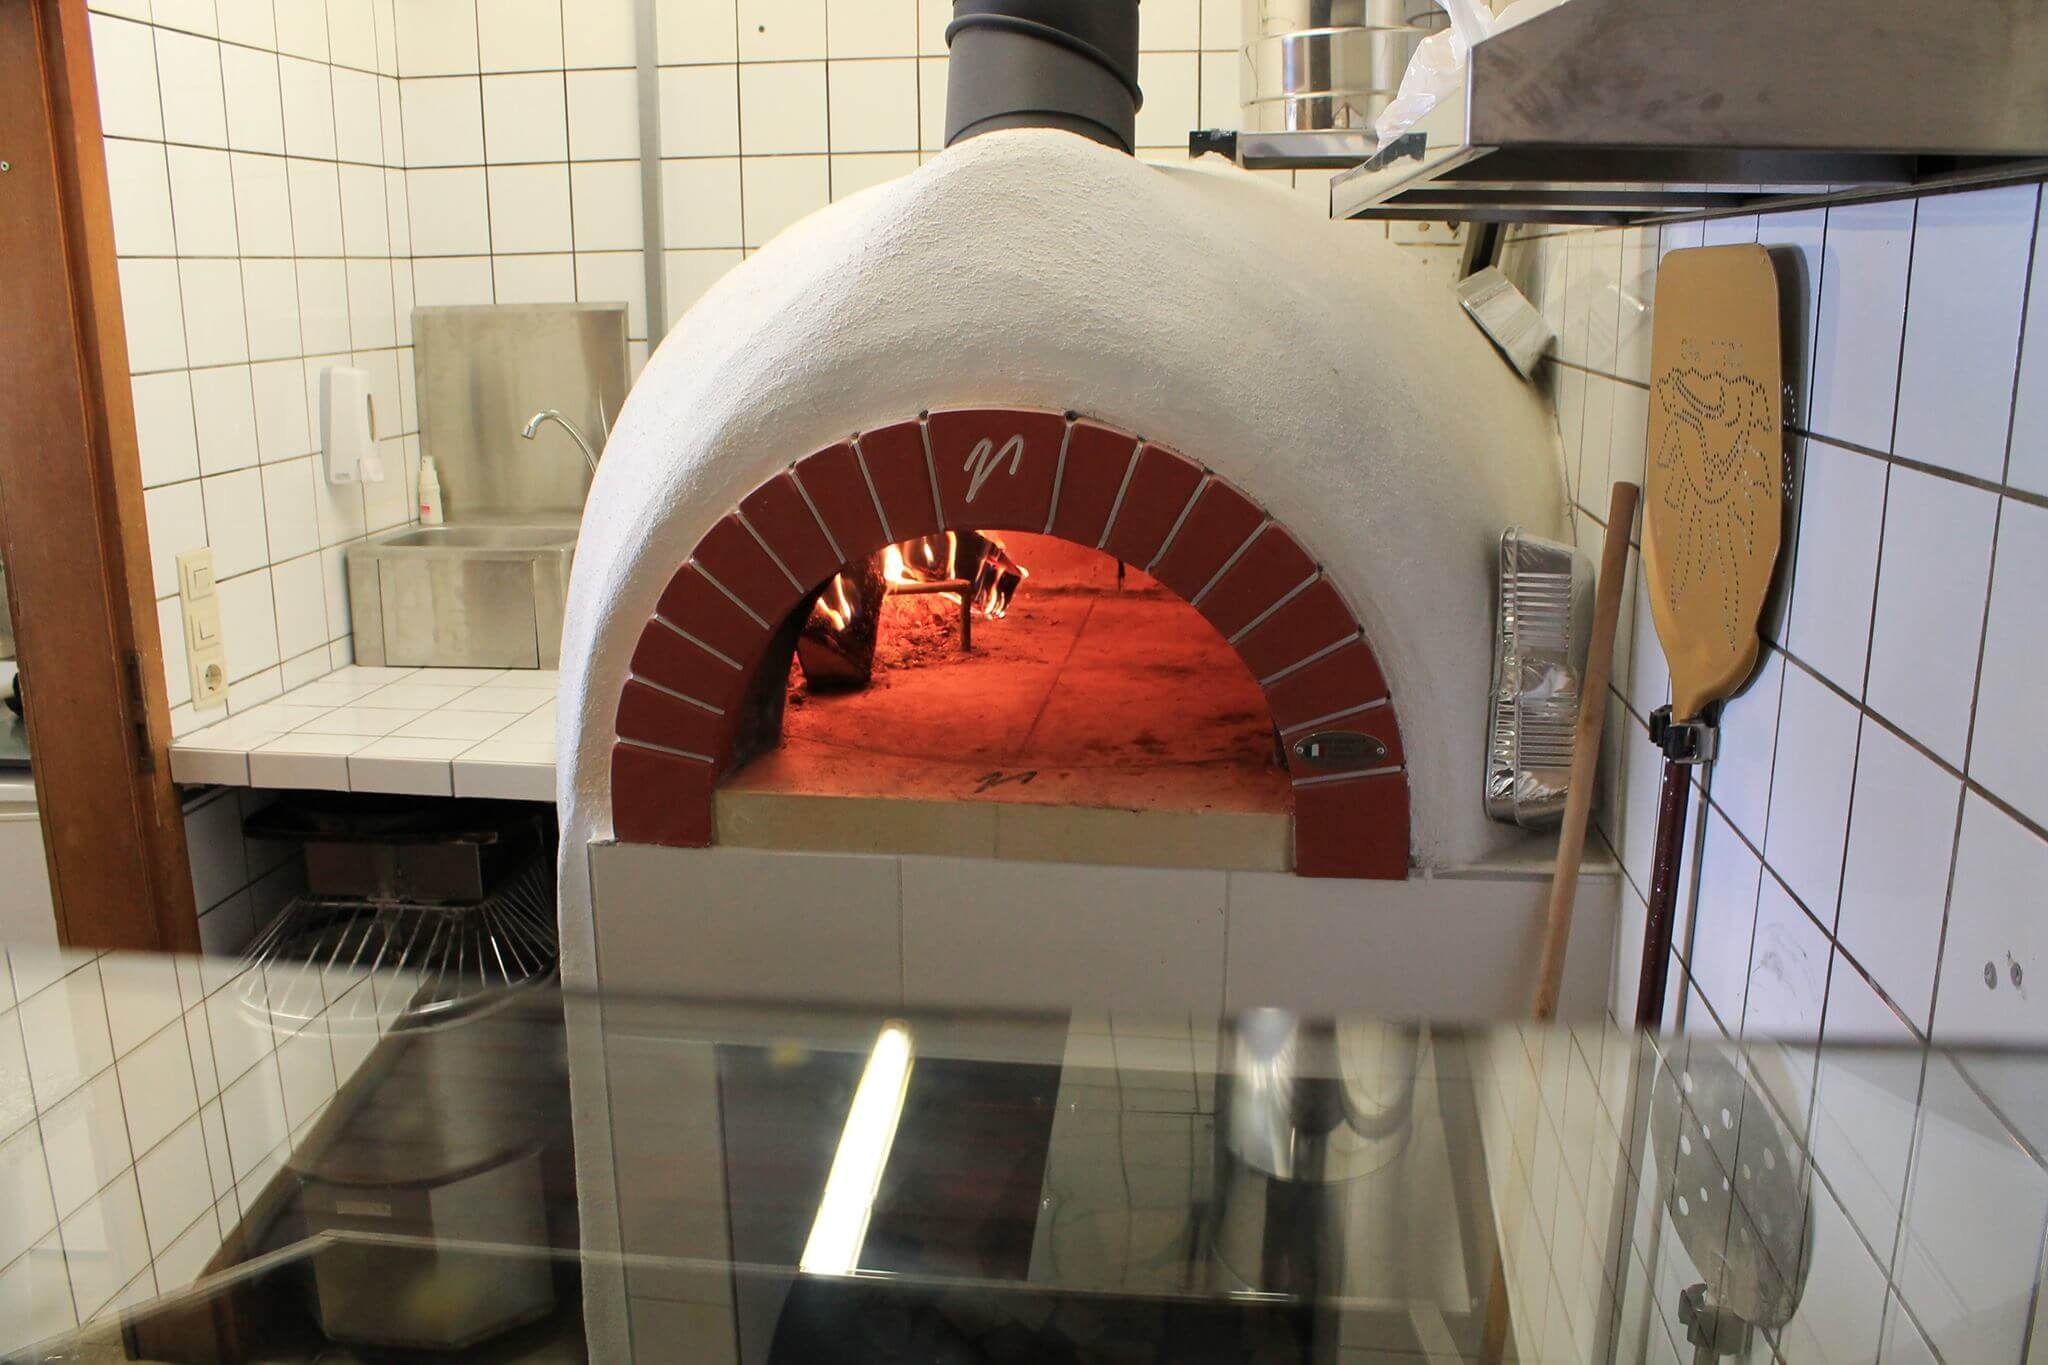 Pizzaofen Bausatz für Gastro: Valoriani Vesuvius GR, Holz und Gas, 100cm Durchmesser